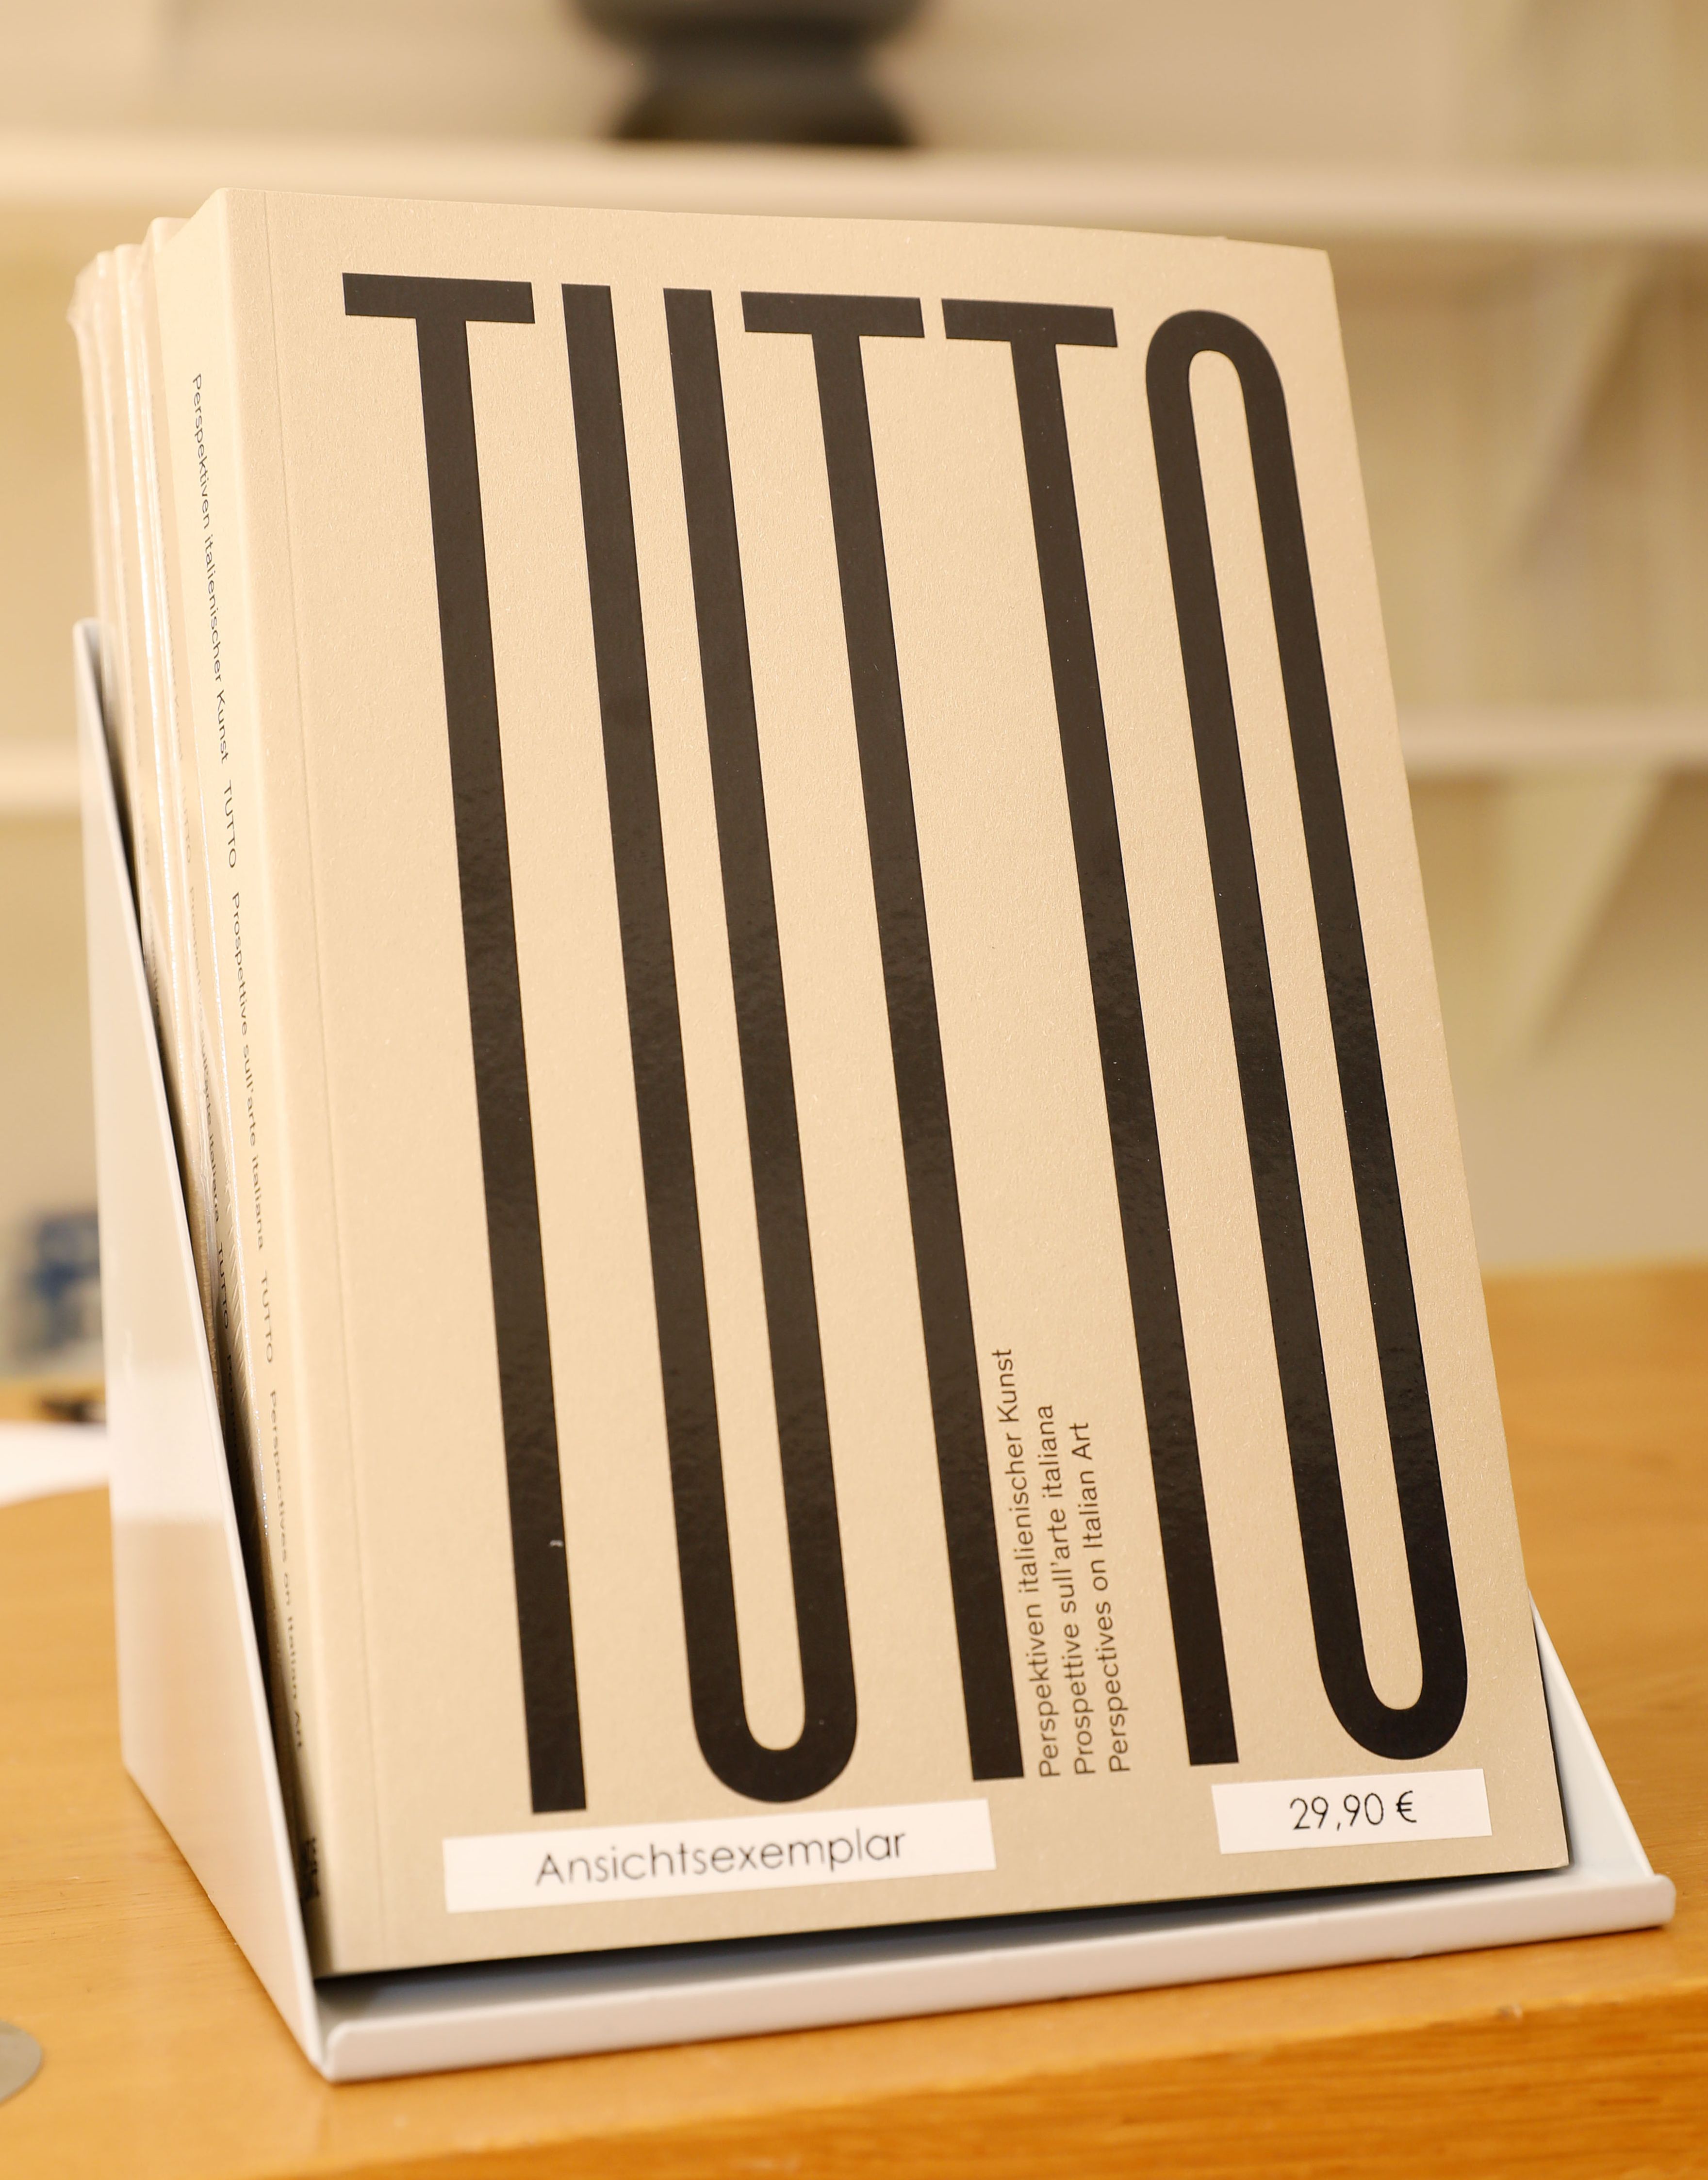 Tischaufsteller mit Ansichtsexemplar des Kataloges "Tutto" 